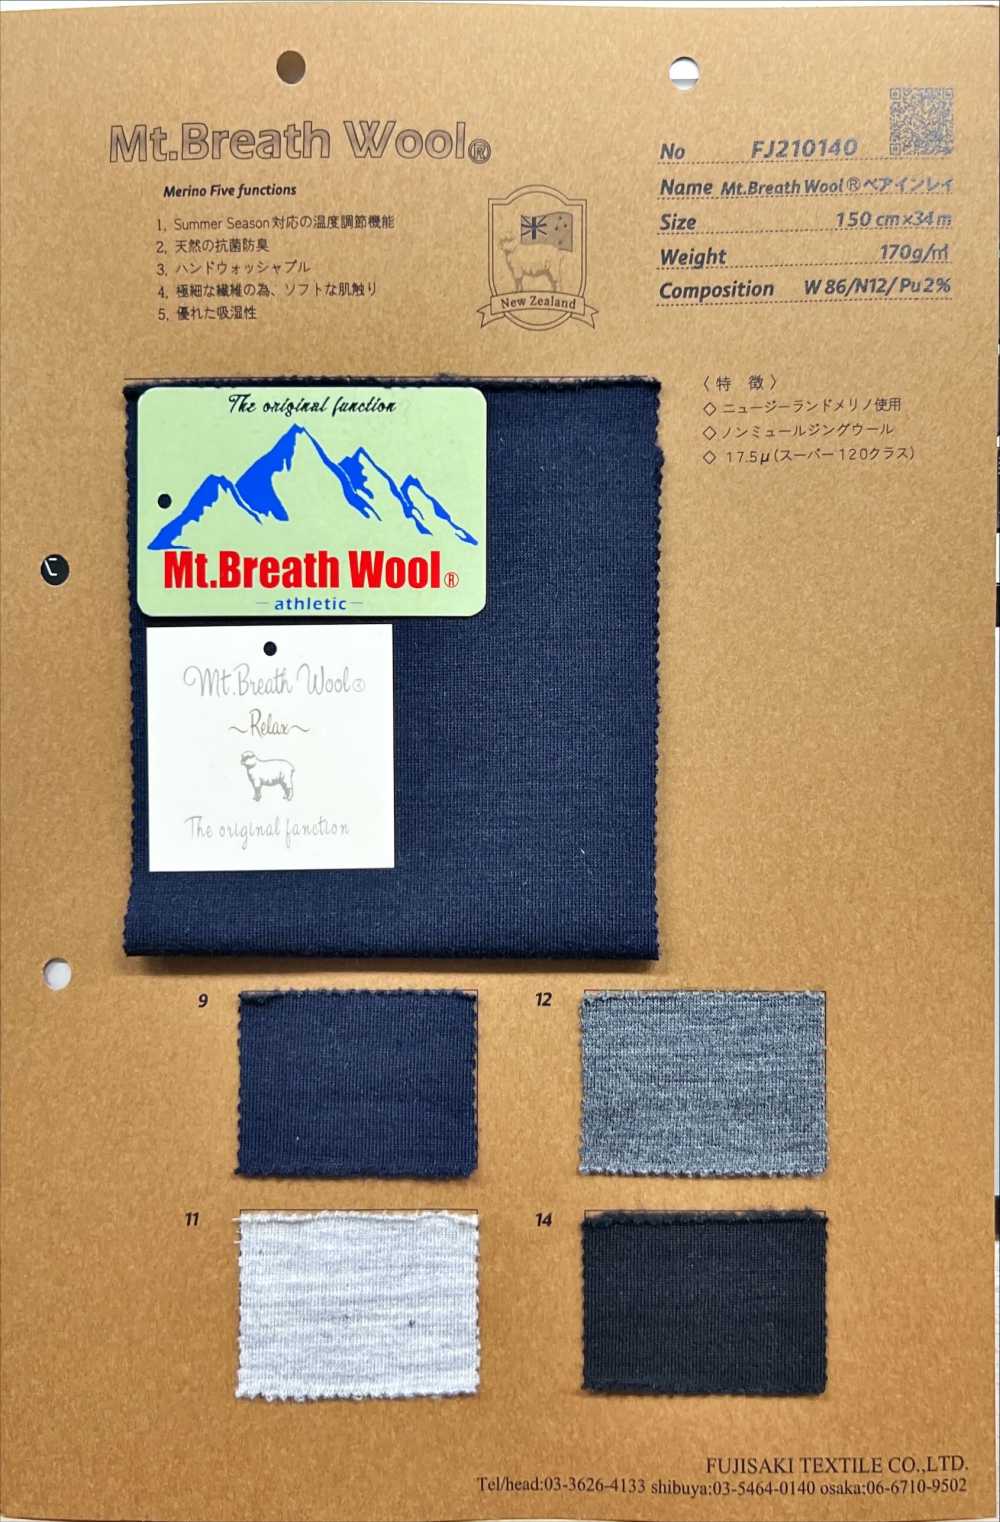 FJ210140 Mt.Breath Wool ベアインレイ[生地] フジサキテキスタイル